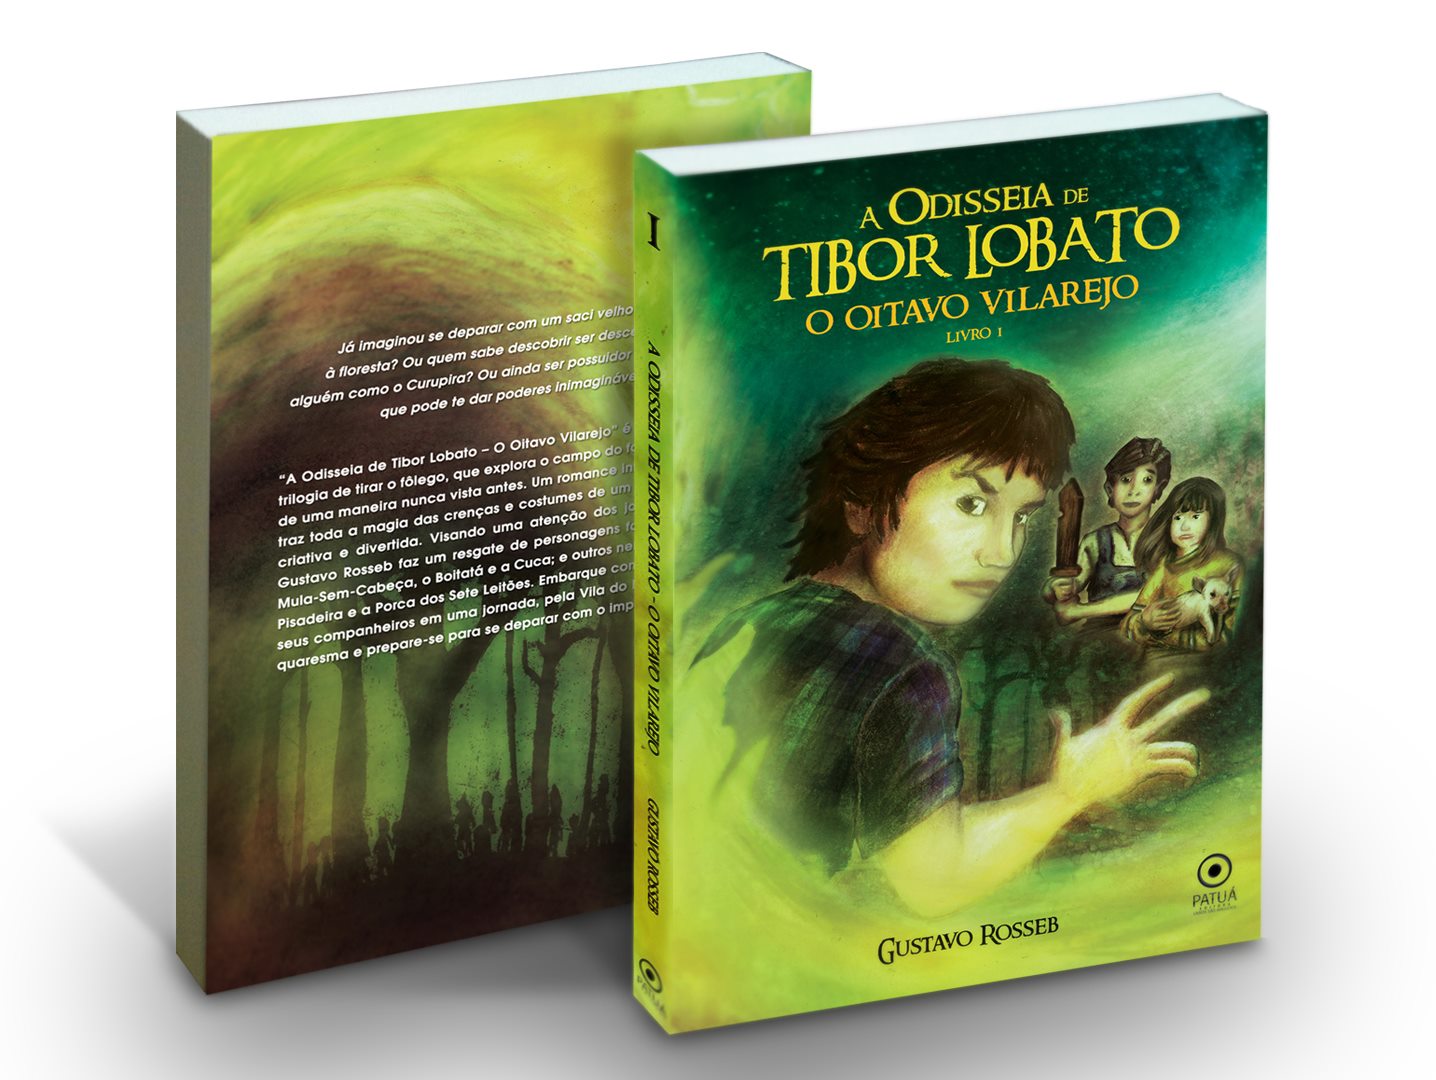 Livro Brasileiro Inspirado Em Harry Potter Tera Adaptacao Ao Cinema